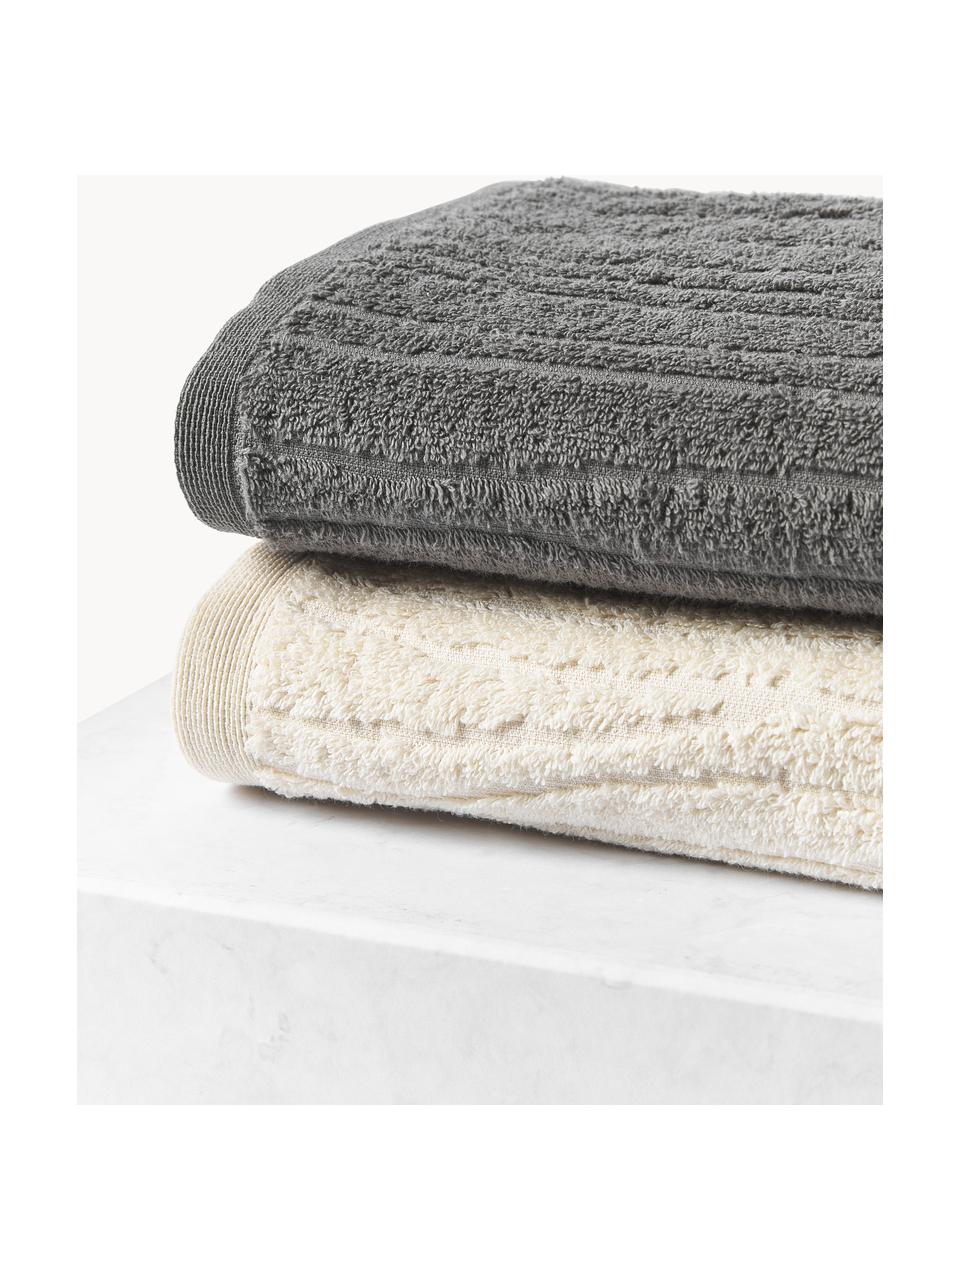 Set di asciugamani in cotone Audrina, in varie misure, Grigio scuro, Set di 3 (asciugamano ospite, asciugamano e telo doccia)